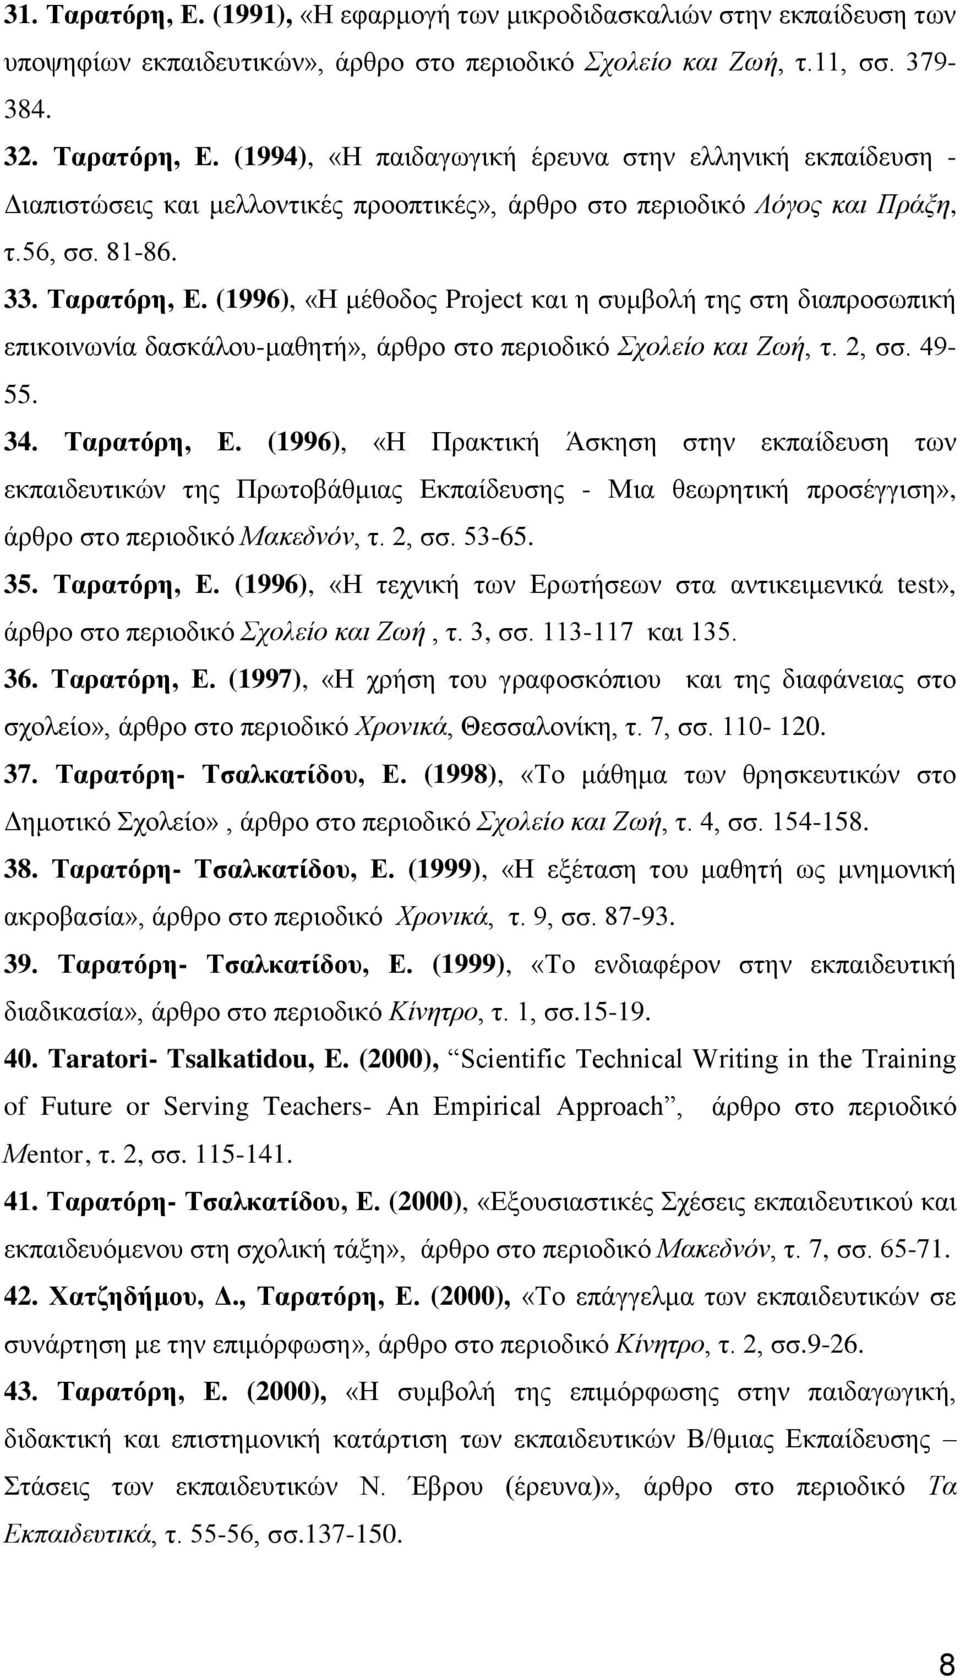 2, σσ. 53-65. 35. Ταρατόρη, Ε. (1996), «Η τεχνική των Ερωτήσεων στα αντικειμενικά test», άρθρο στο περιοδικό Σχολείο και Ζωή, τ. 3, σσ. 113-117 και 135. 36. Ταρατόρη, Ε. (1997), «Η χρήση του γραφοσκόπιου και της διαφάνειας στο σχολείο», άρθρο στο περιοδικό Χρονικά, Θεσσαλονίκη, τ.